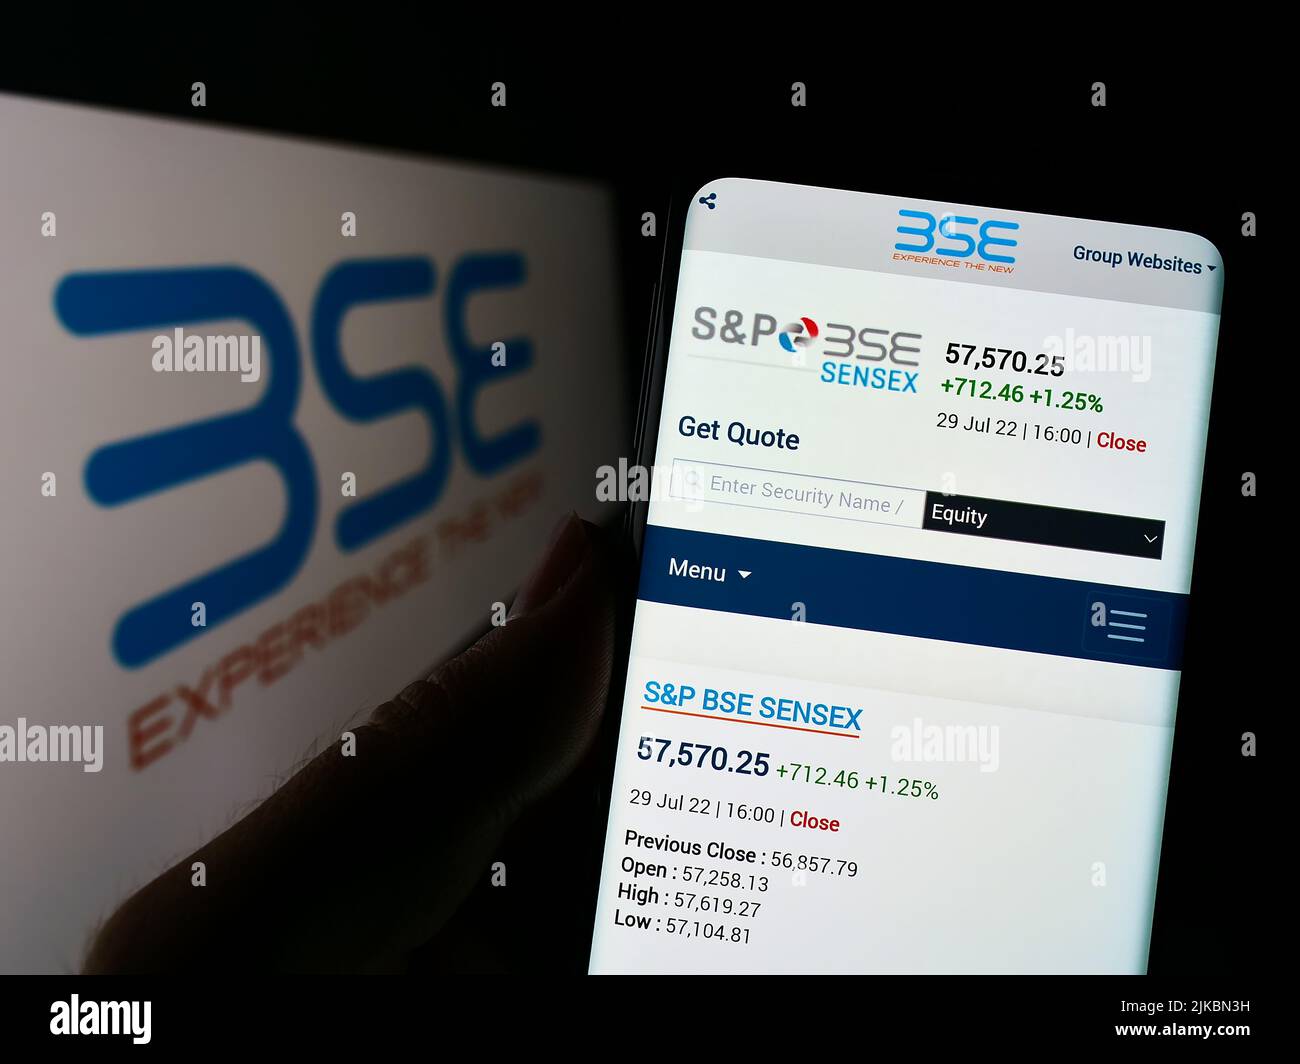 Personne tenant un smartphone avec le site Web de la société BSE Limited (Bombay stock Exchange) à l'écran avec logo. Concentrez-vous sur le centre de l'écran du téléphone. Banque D'Images